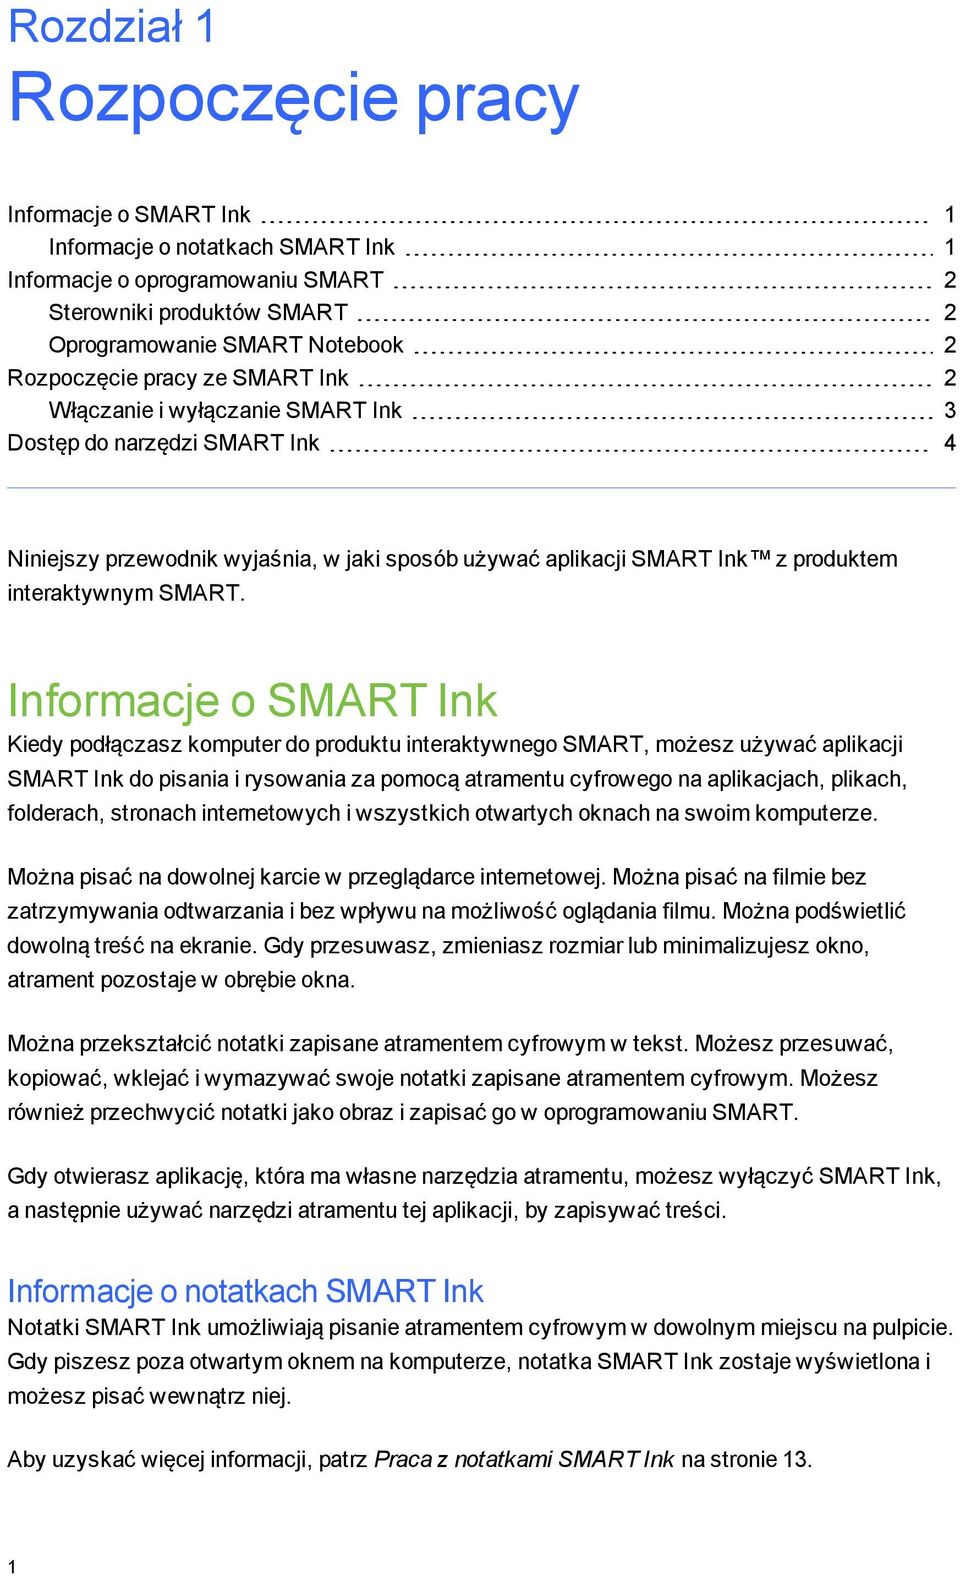 Informacje o SMART Ink Kiedy podłączasz komputer do produktu interaktywneo SMART, możesz używać aplikacji SMART Ink do pisania i rysowania za pomocą atramentu cyfroweo na aplikacjach, plikach,